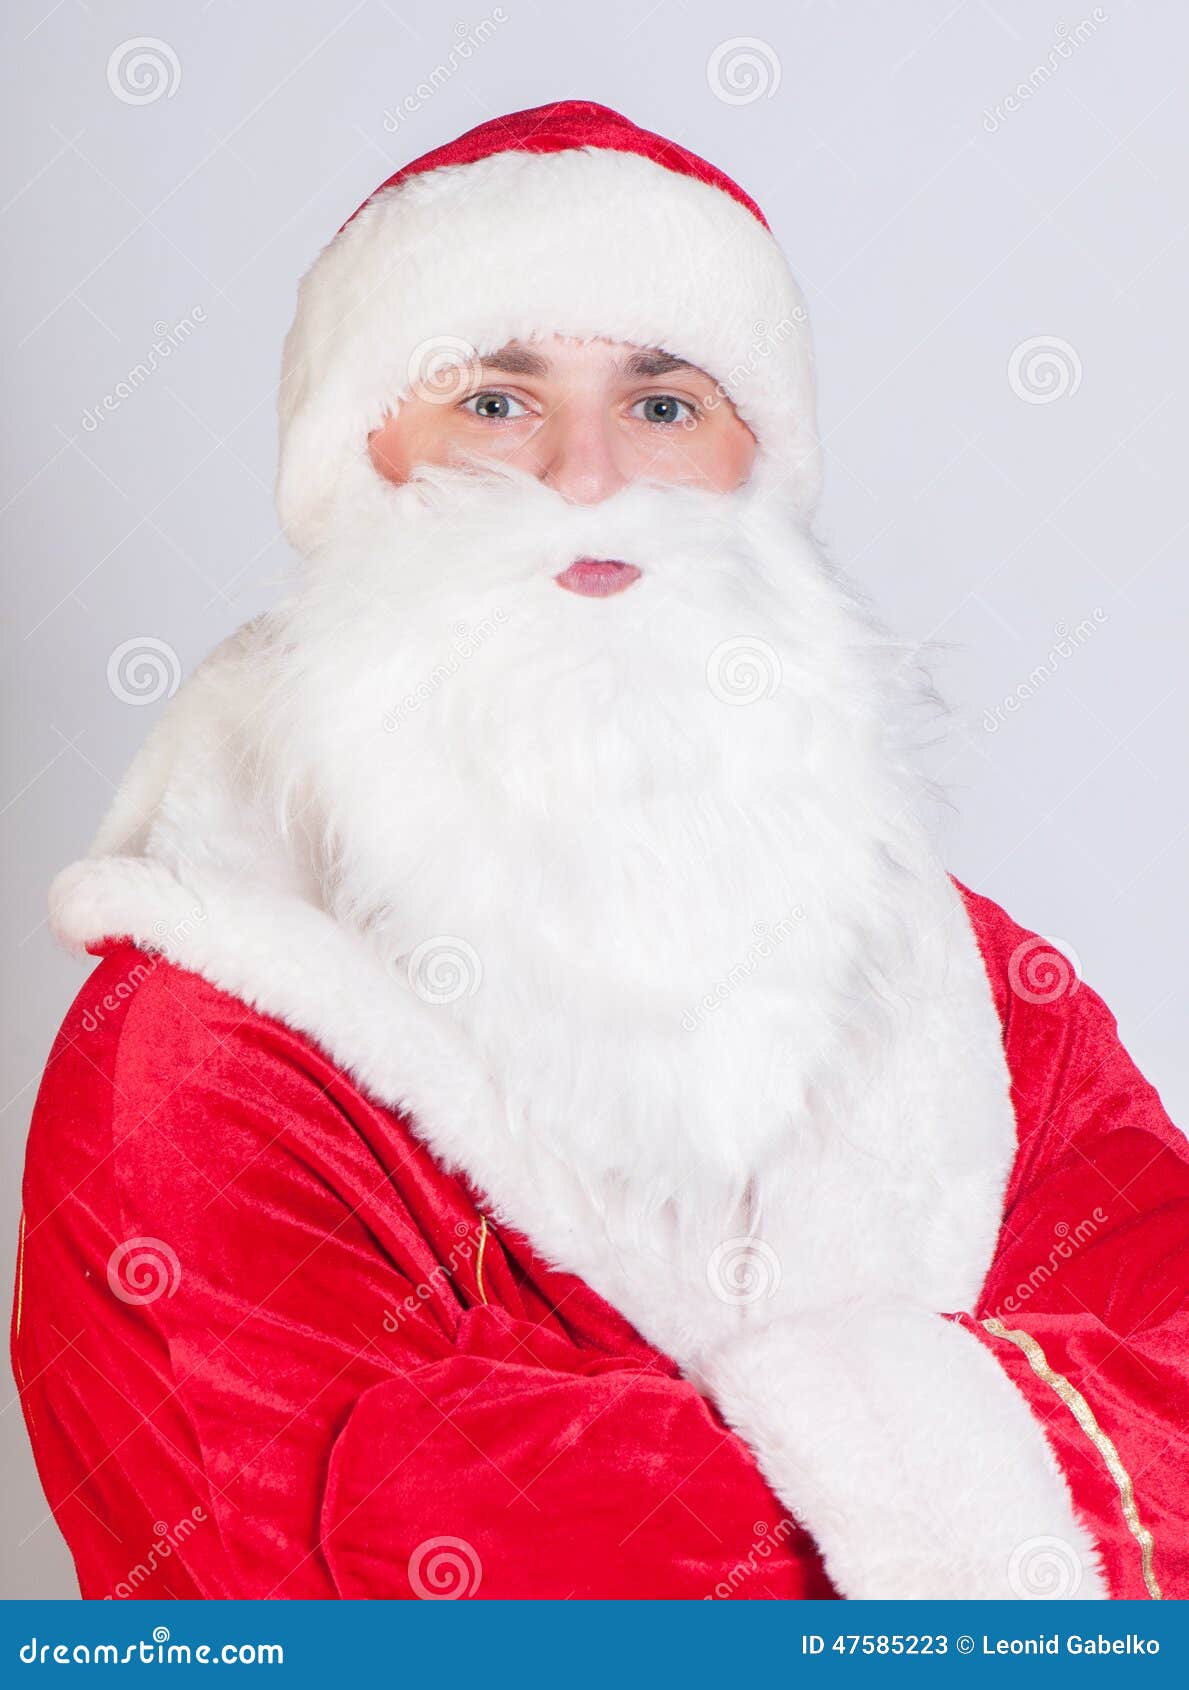 Santa Claus stock image. Image of adult, ridicule, beautiful - 47585223